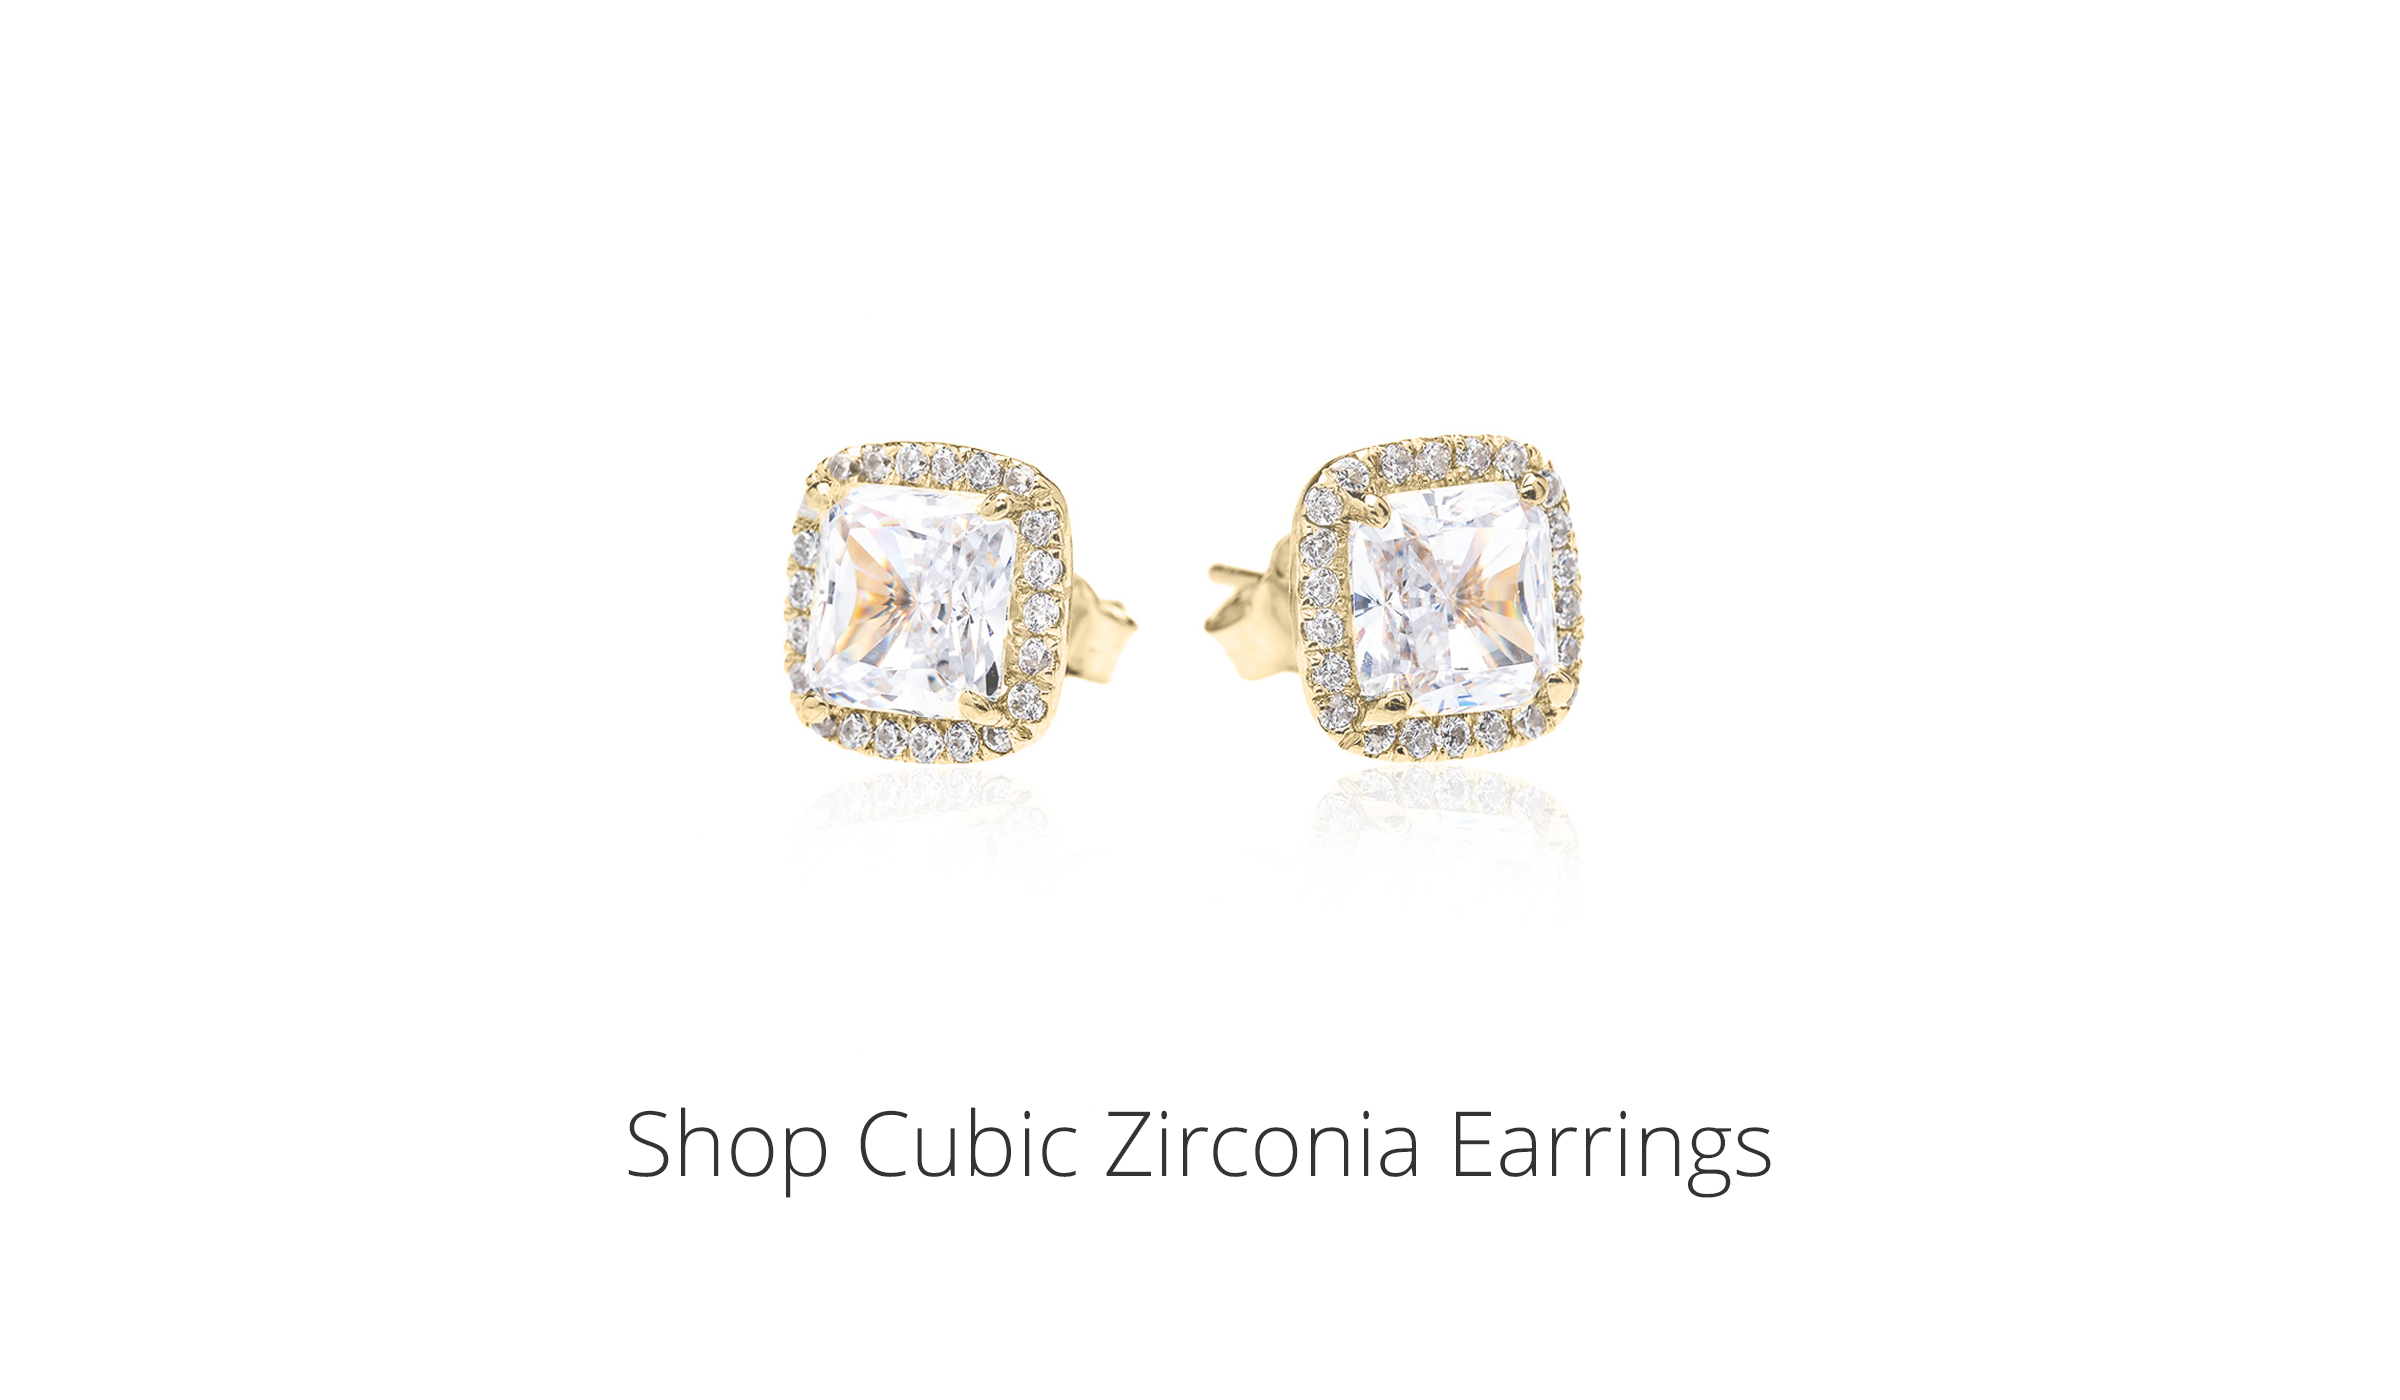 Shop Cubic Zirconia Earrings